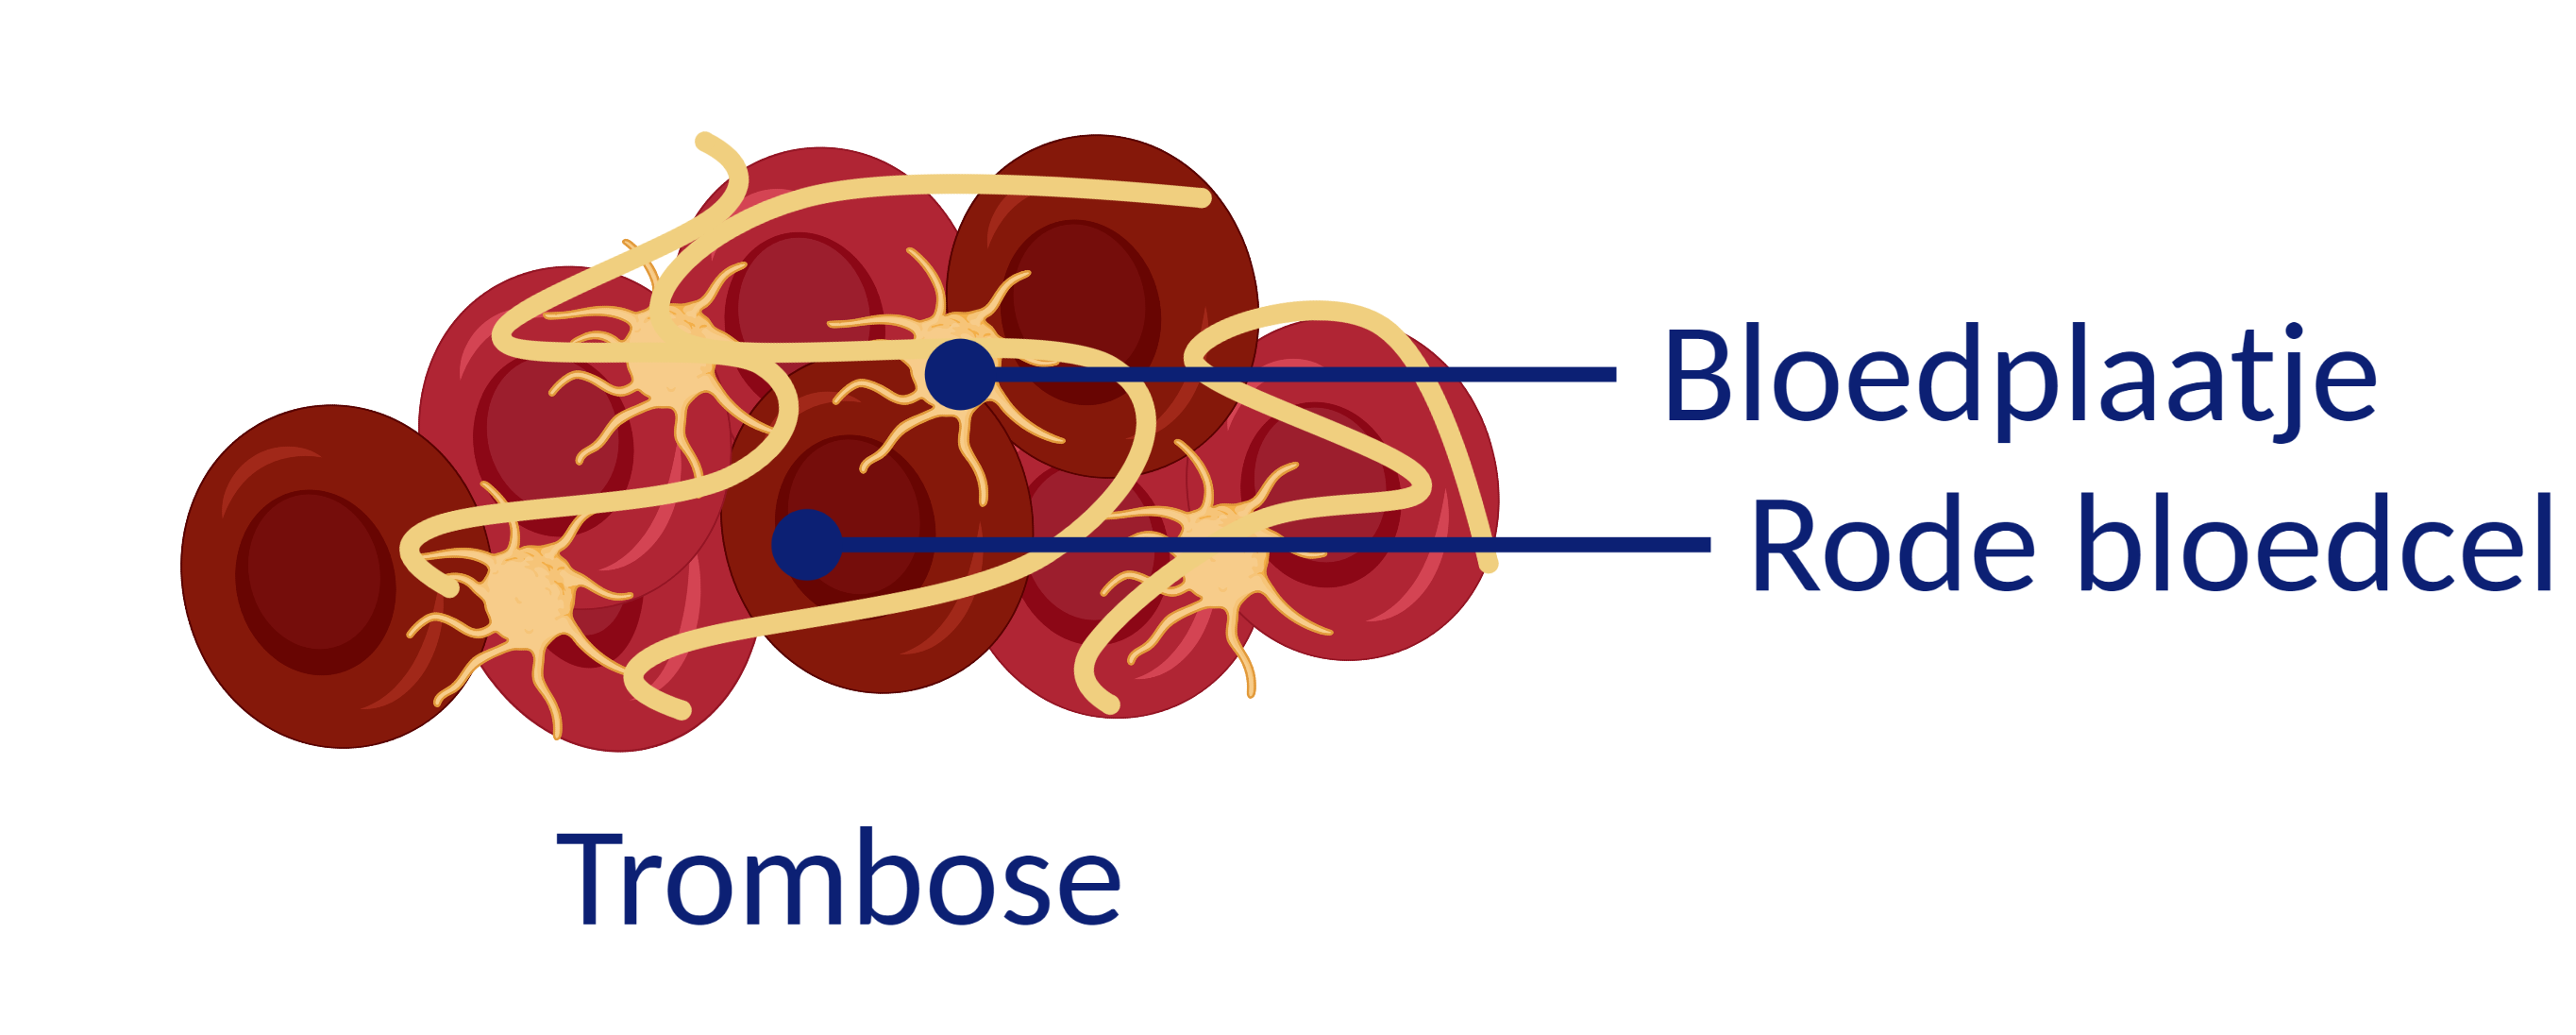 trombose bloedplaatje en rode bloedcel